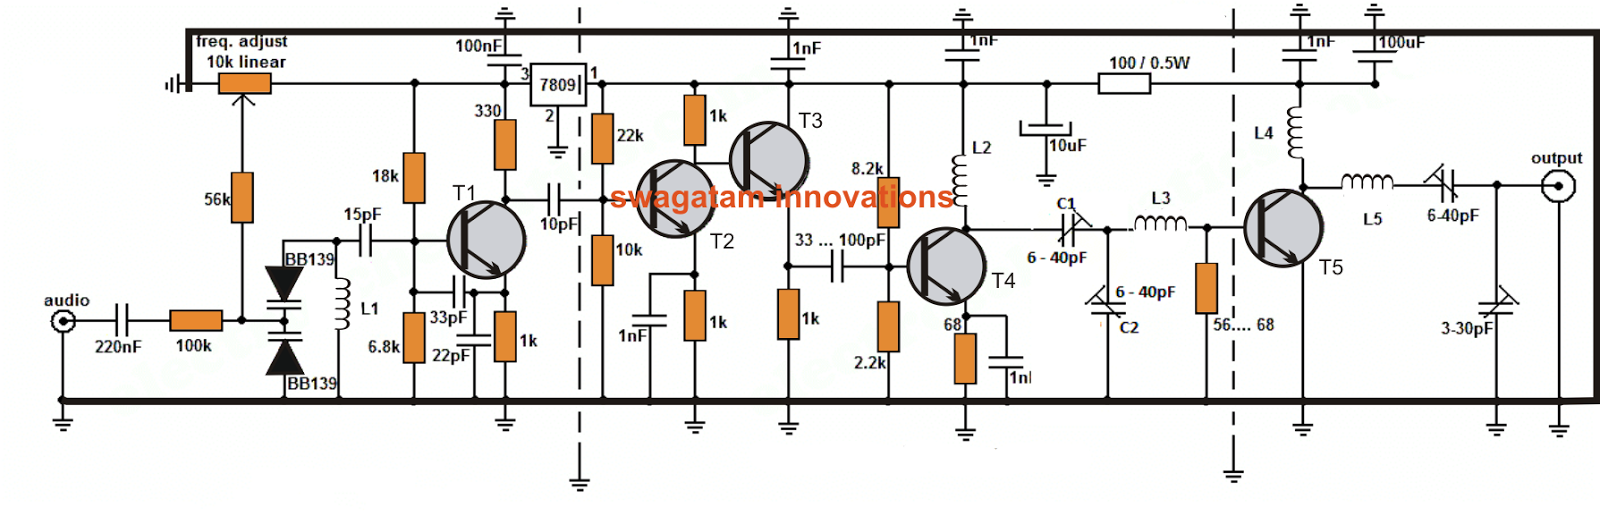 Long Range Transmitter Circuit - 2 to 5 Km Range | Circuit Diagram Centre